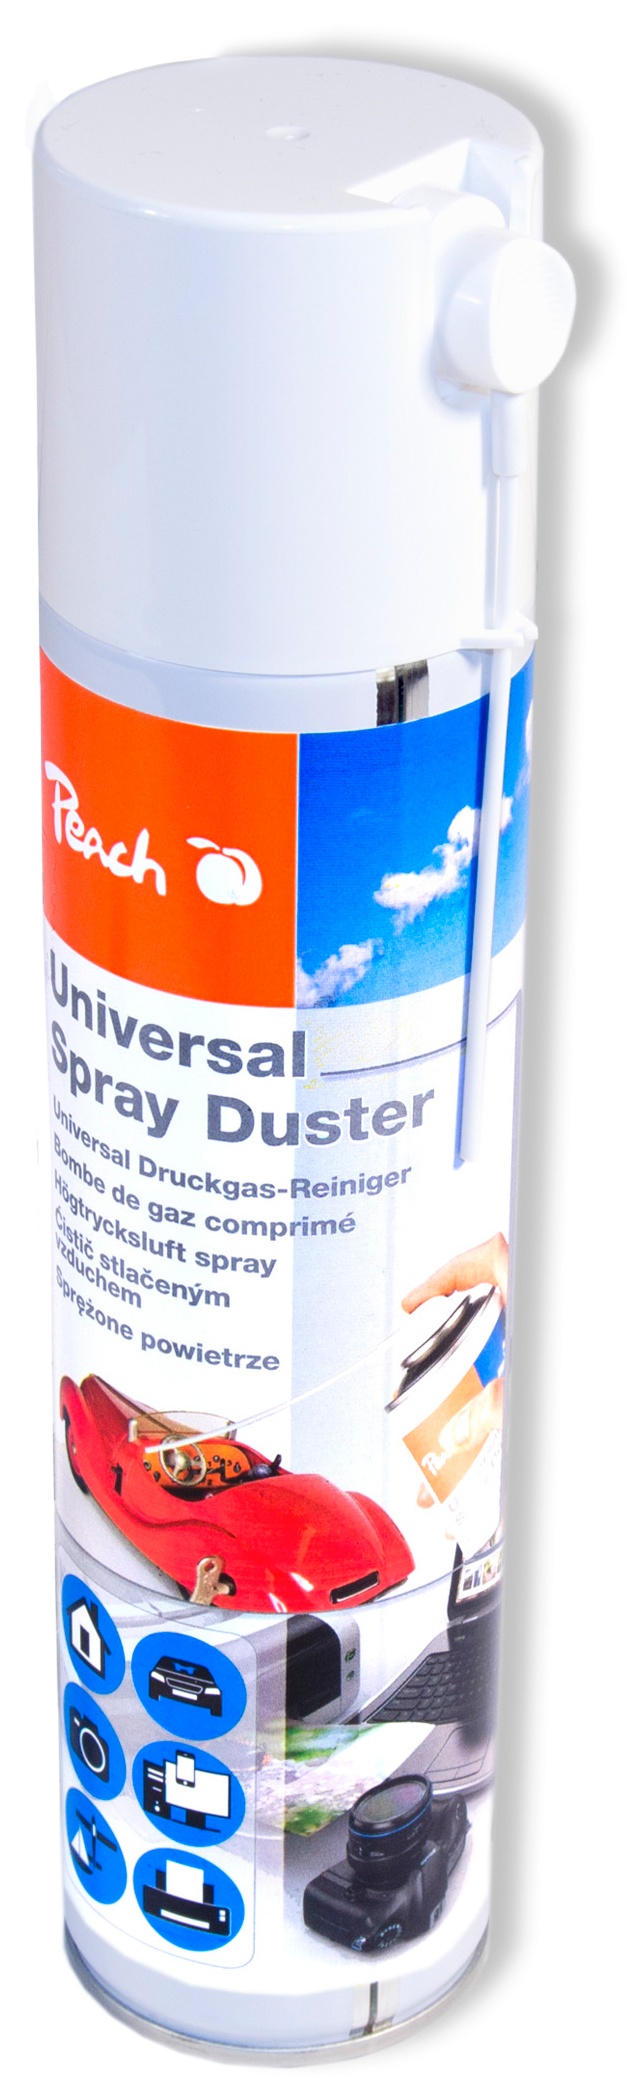 Peach Universal Druckgas Spray 400 ml, 1 Stück | Präzise, dank Sprühkopfverlängerung | ideal für die Reinigung im Haushalt und Büro | Druckluftreiniger | Fckw-frei | Druckluft Spray | PA100